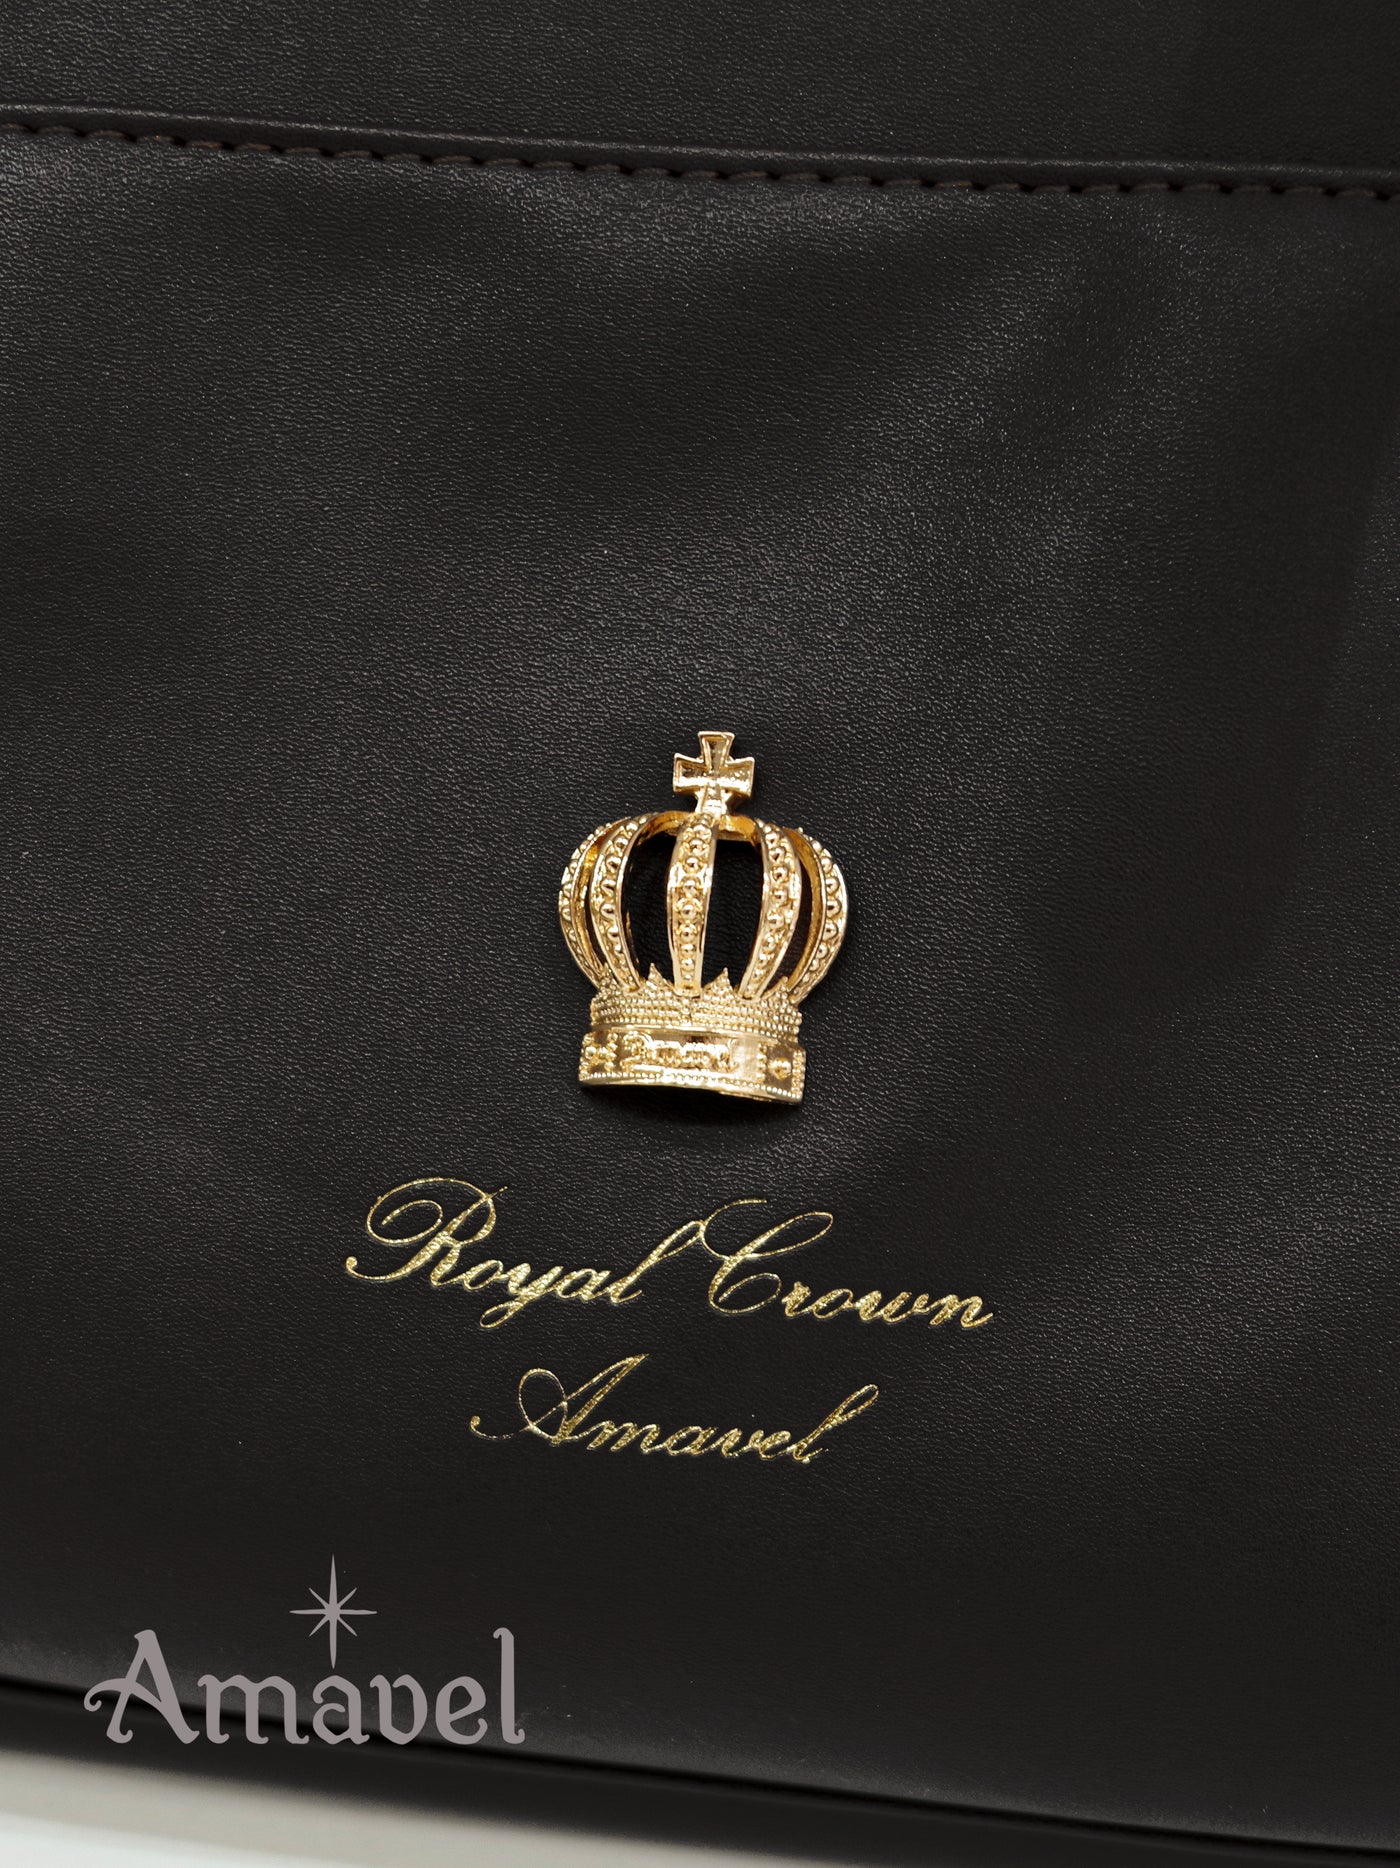 Royal Crown tote bag